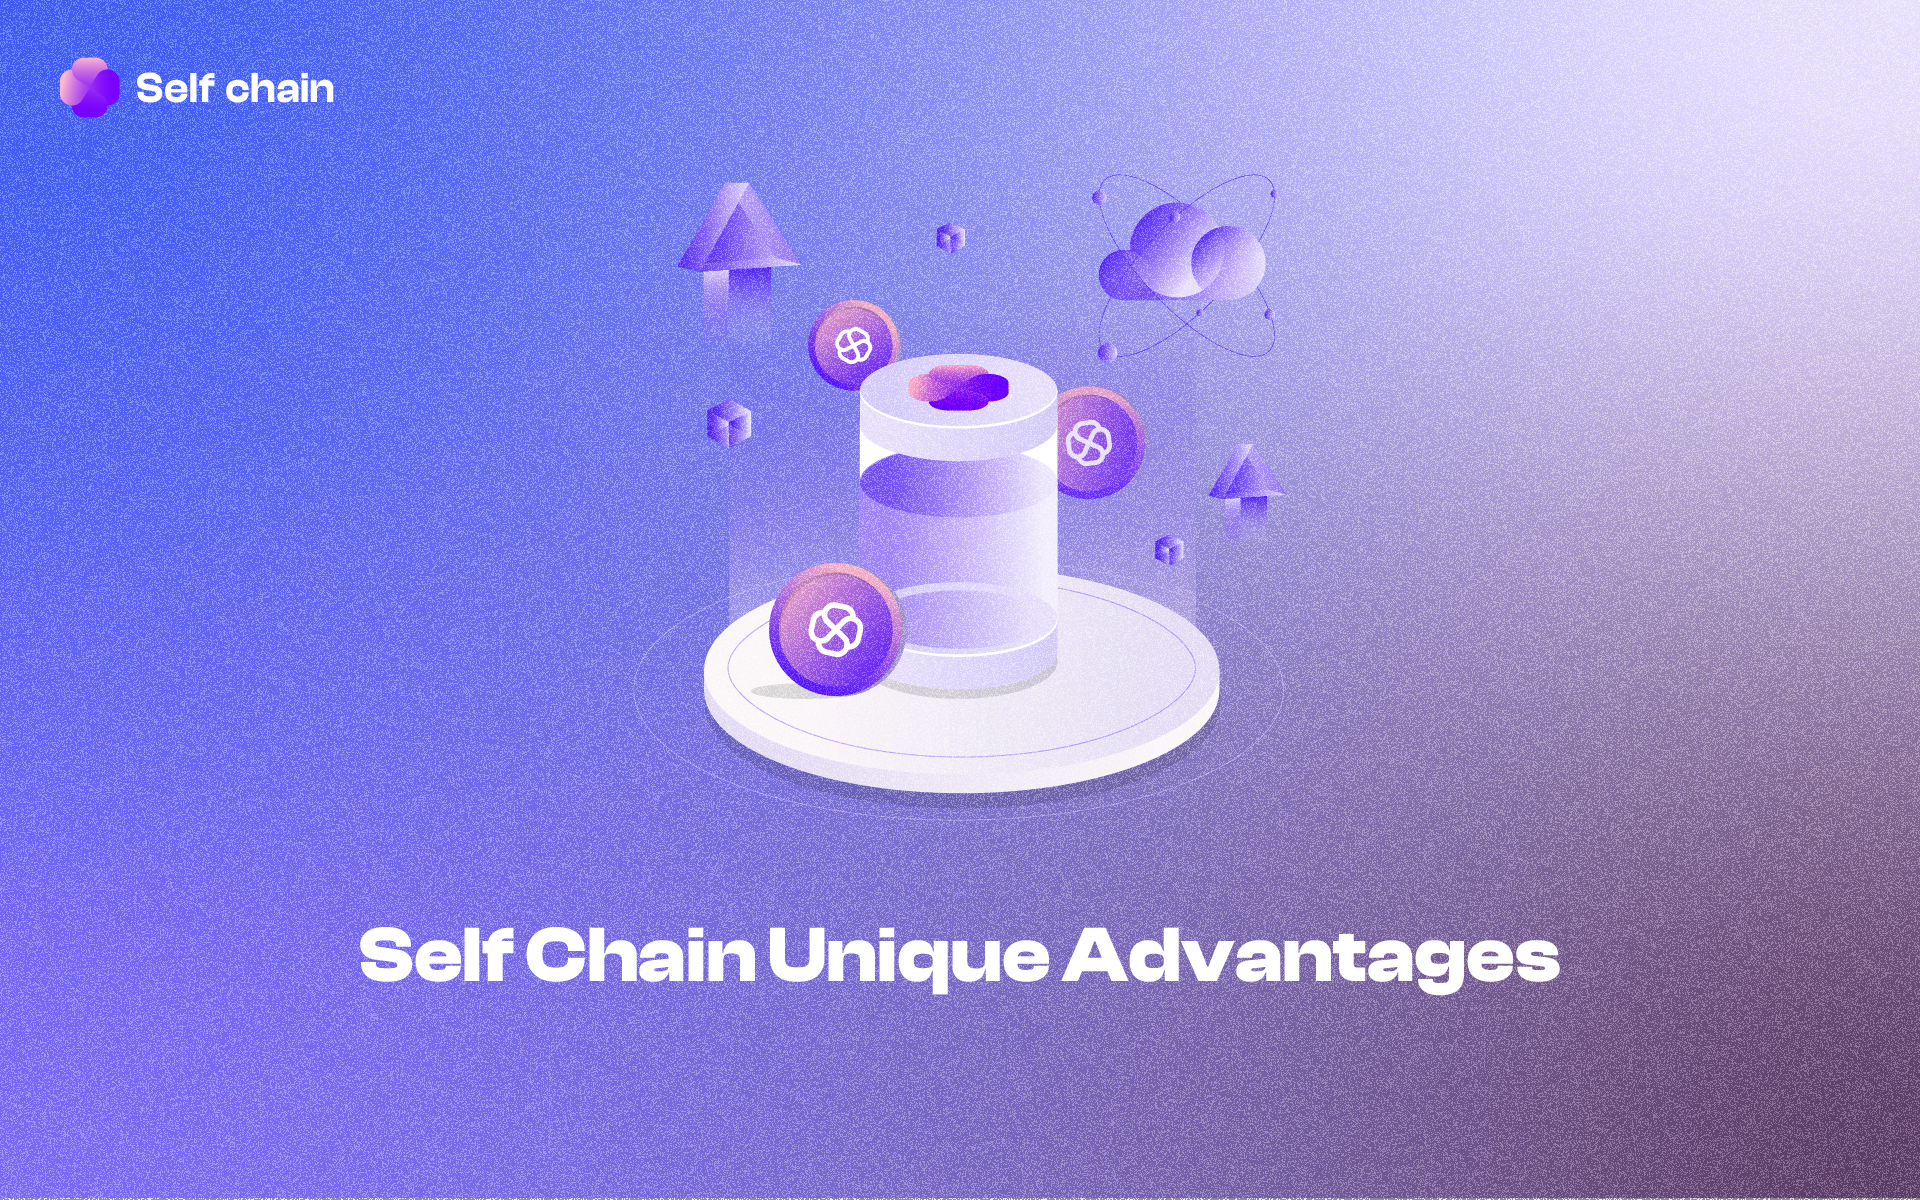 Self Chain Unique Advantages